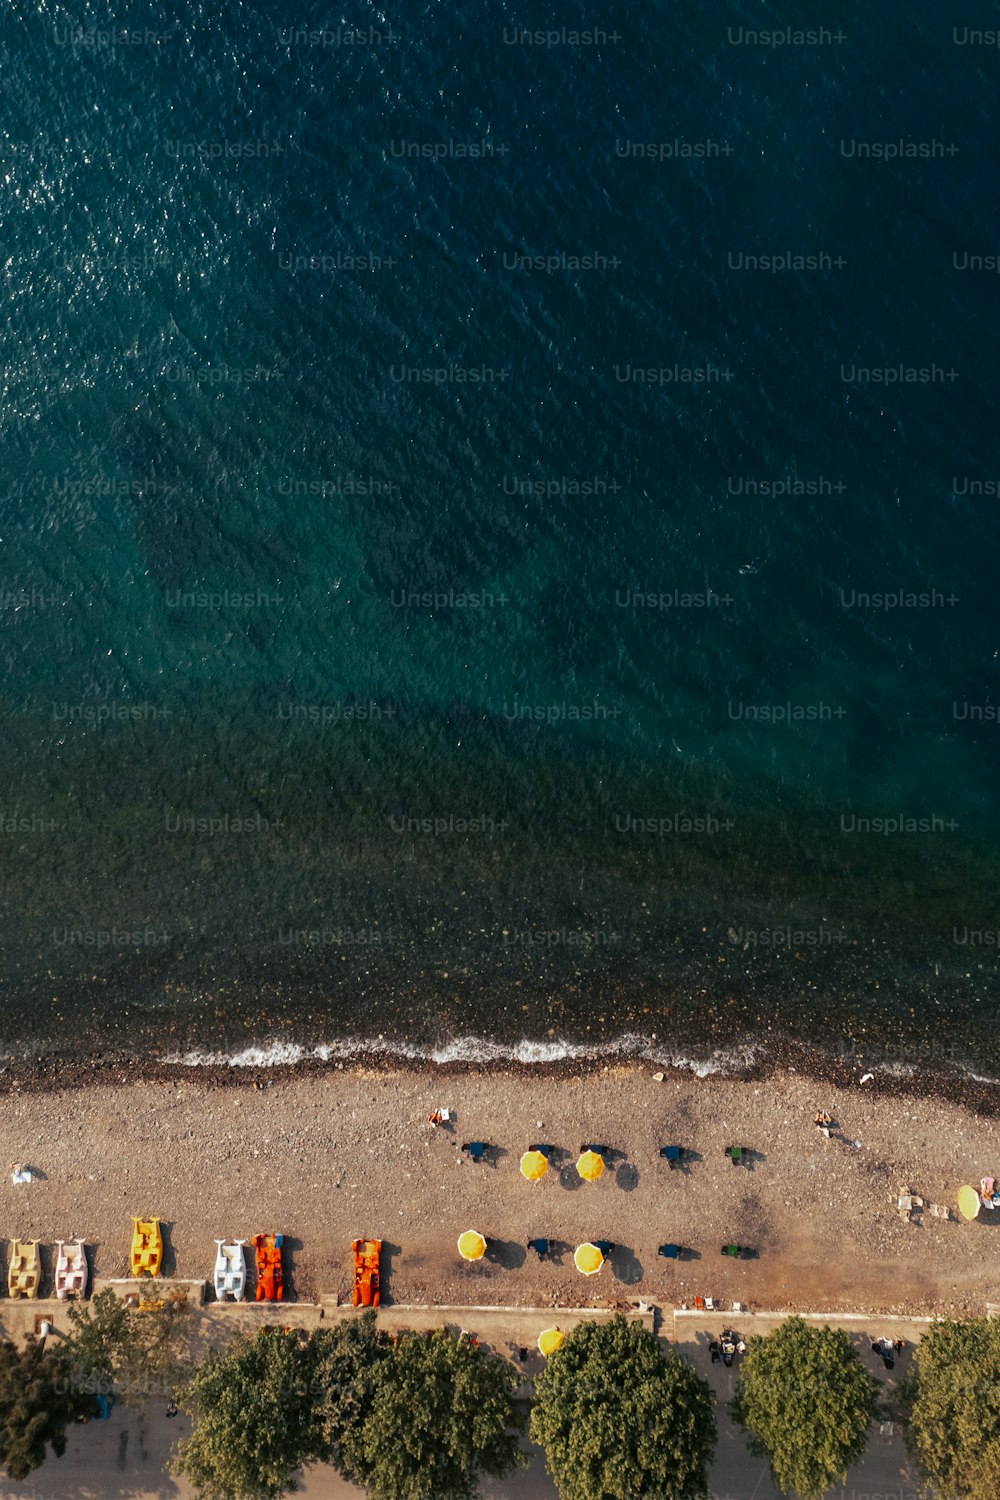 Eine Luftaufnahme eines Strandes mit darauf geparkten Autos